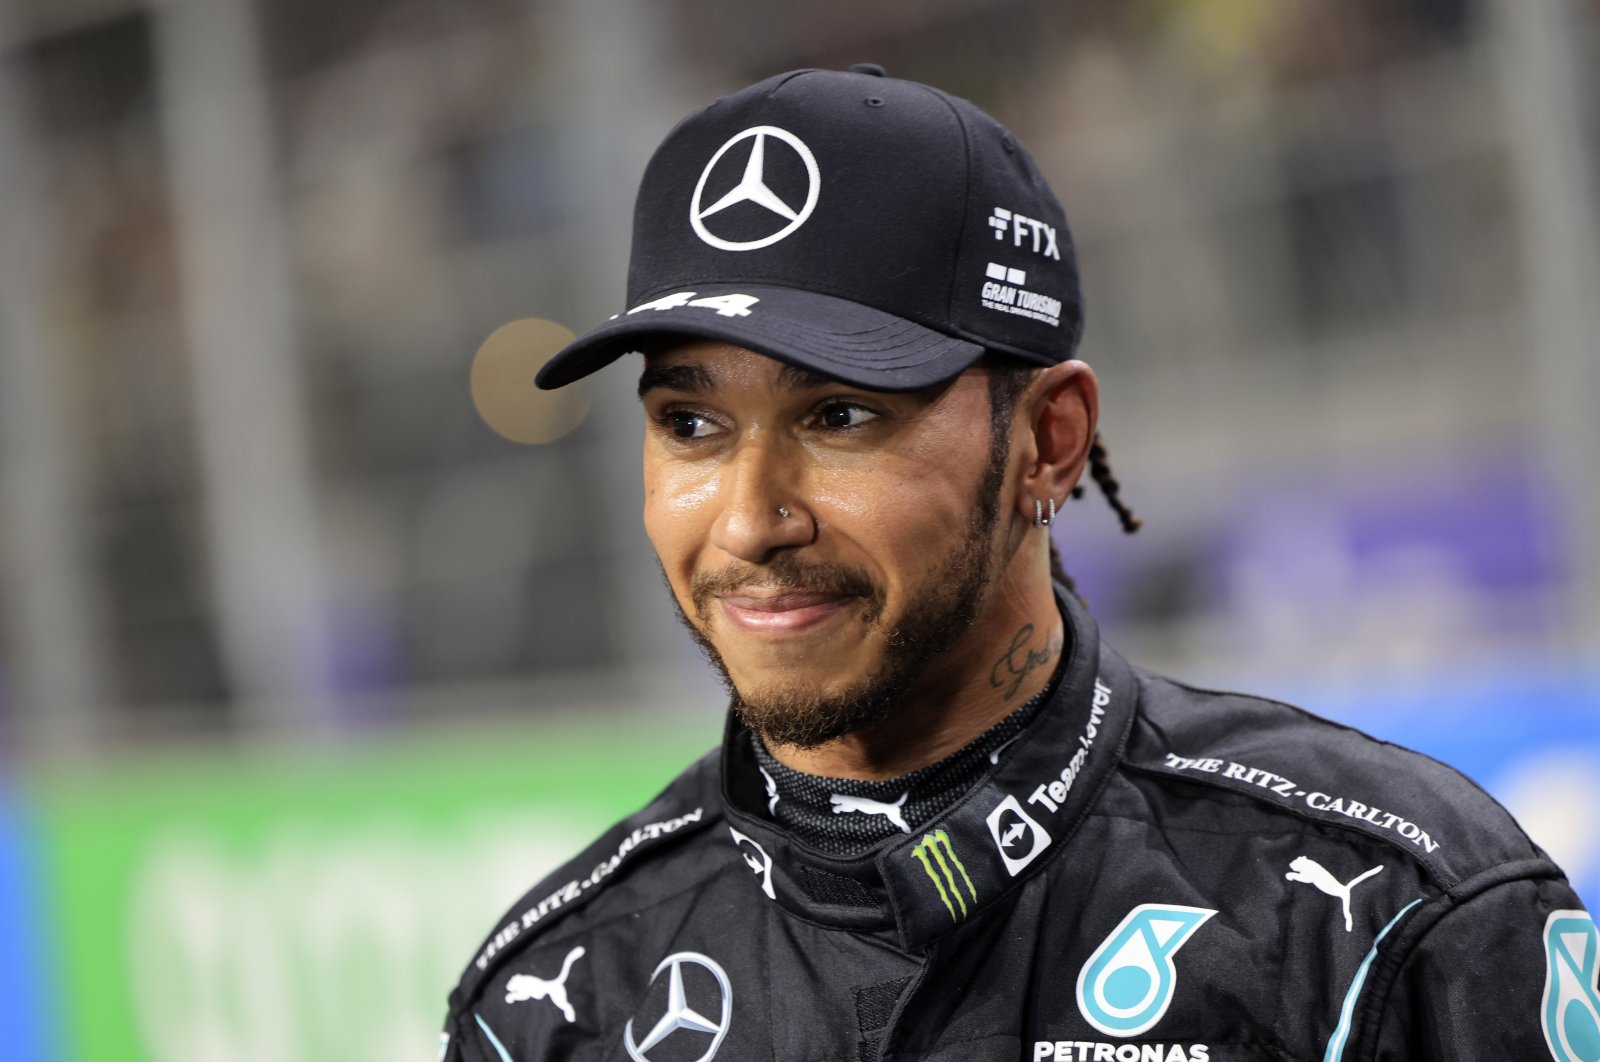 ‘Saya kembali’: Hamilton mengisyaratkan kembalinya F1 setelah jeda media sosial